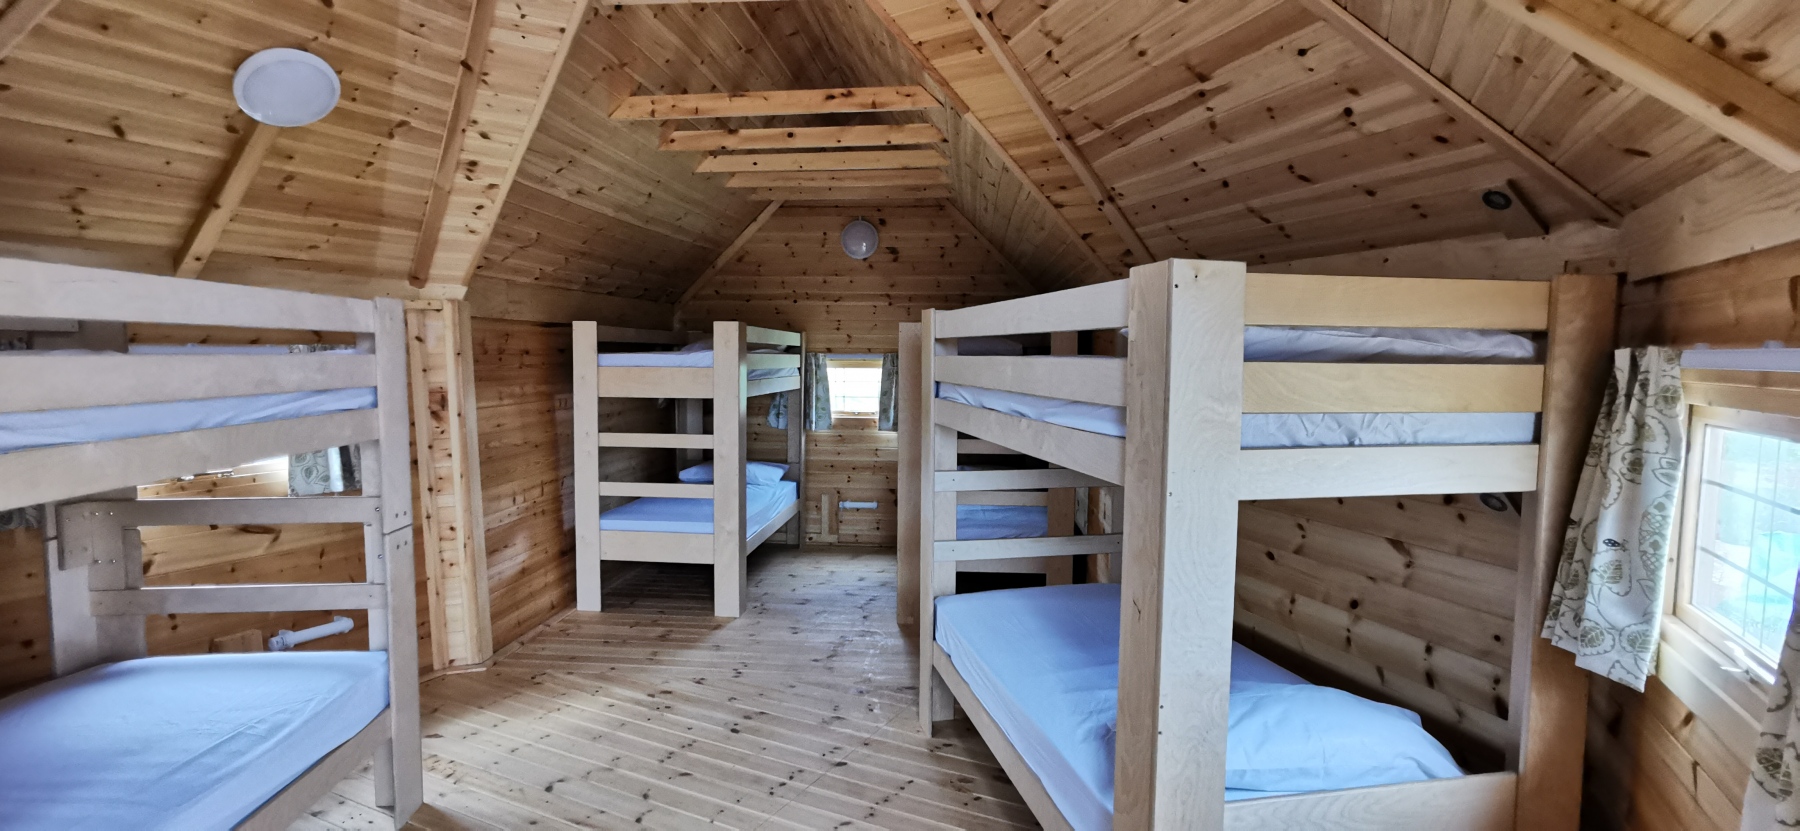 Timber yurts bunk beds